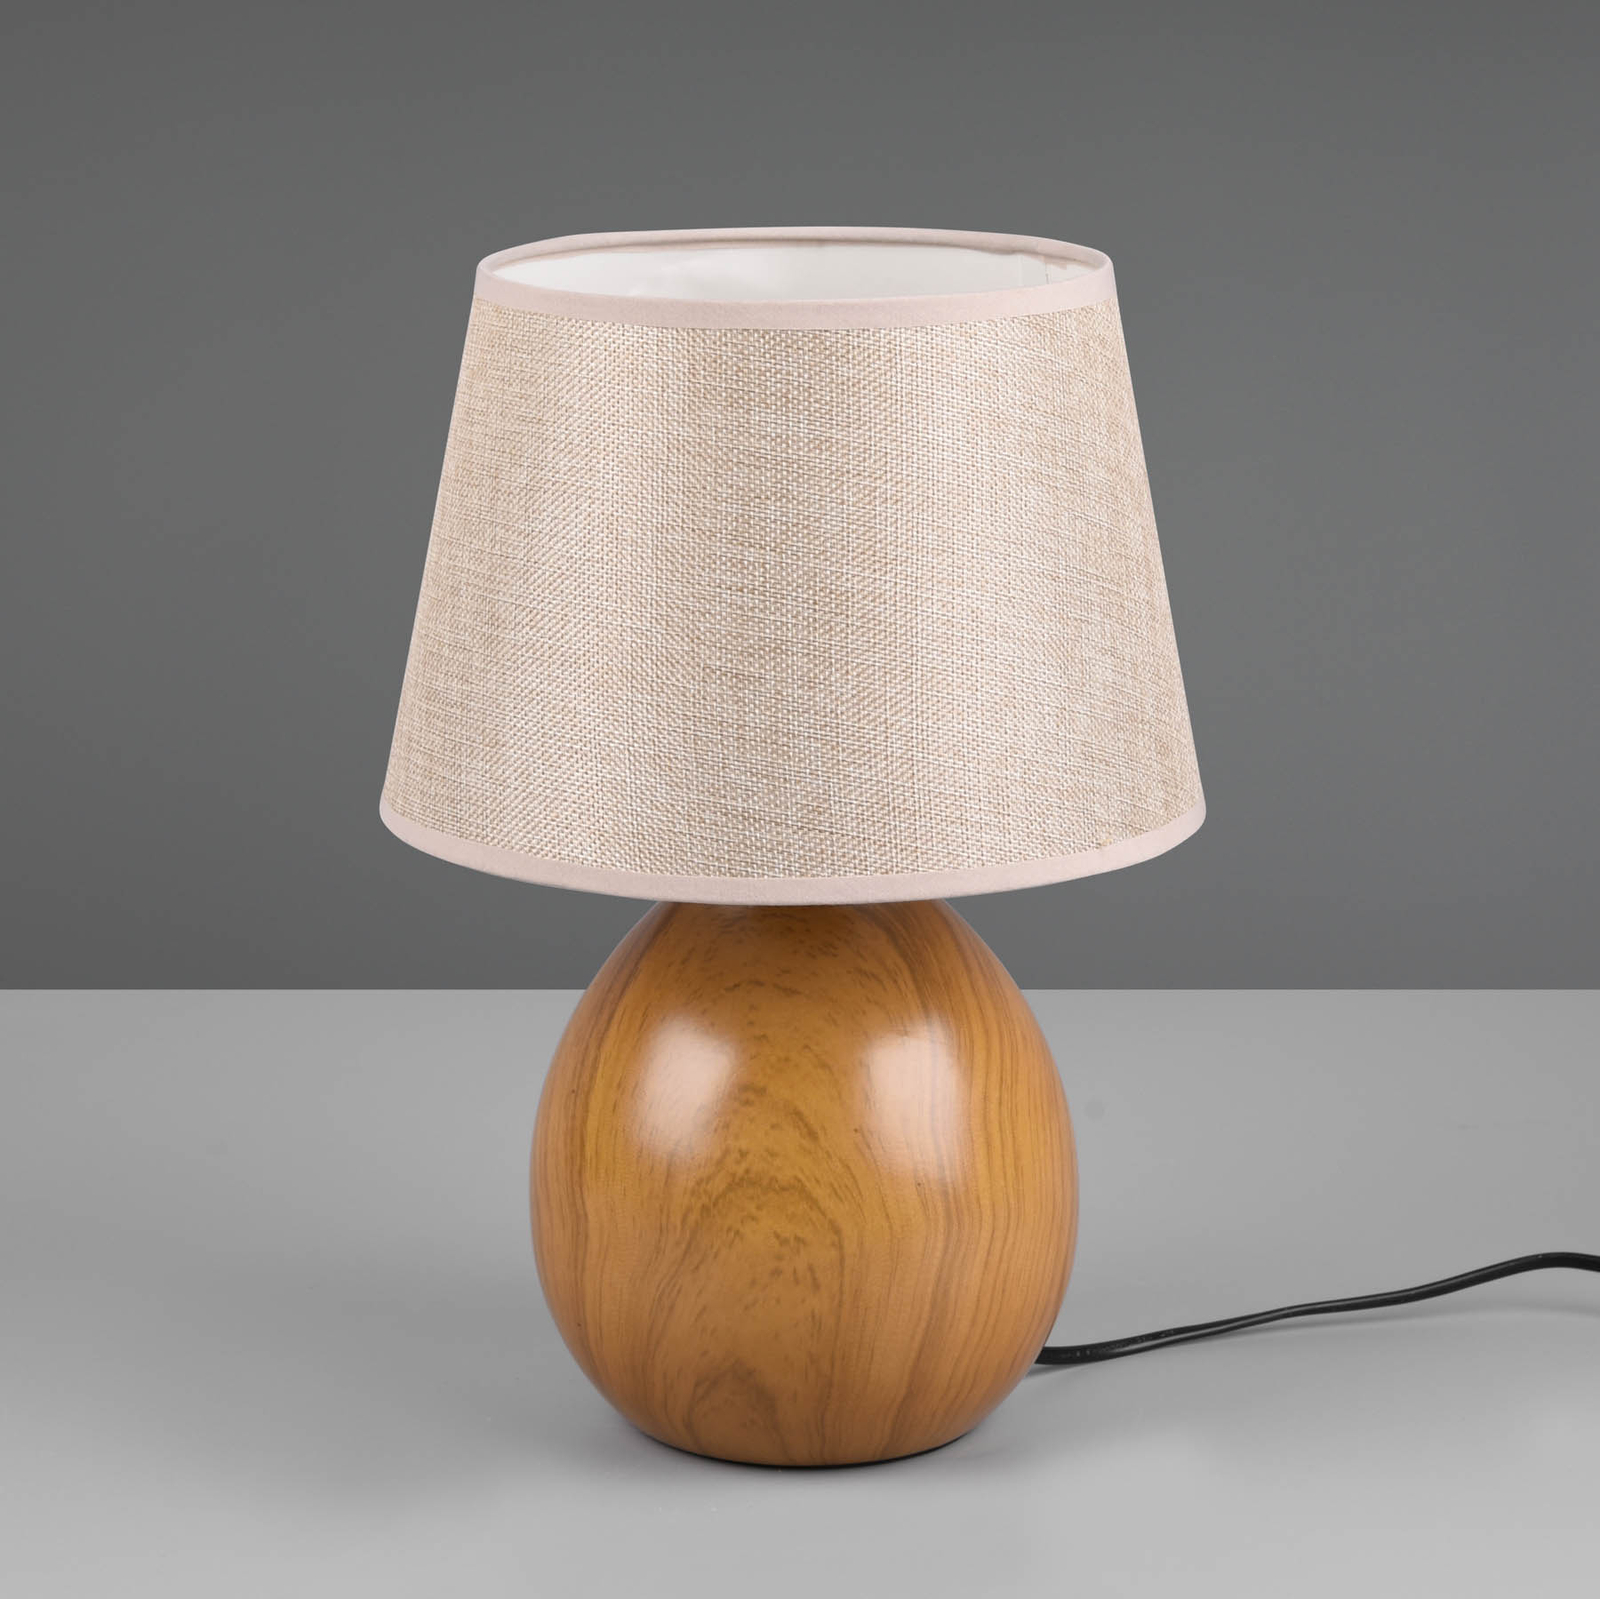 Loxur table lamp, height 35 cm, beige/wood look